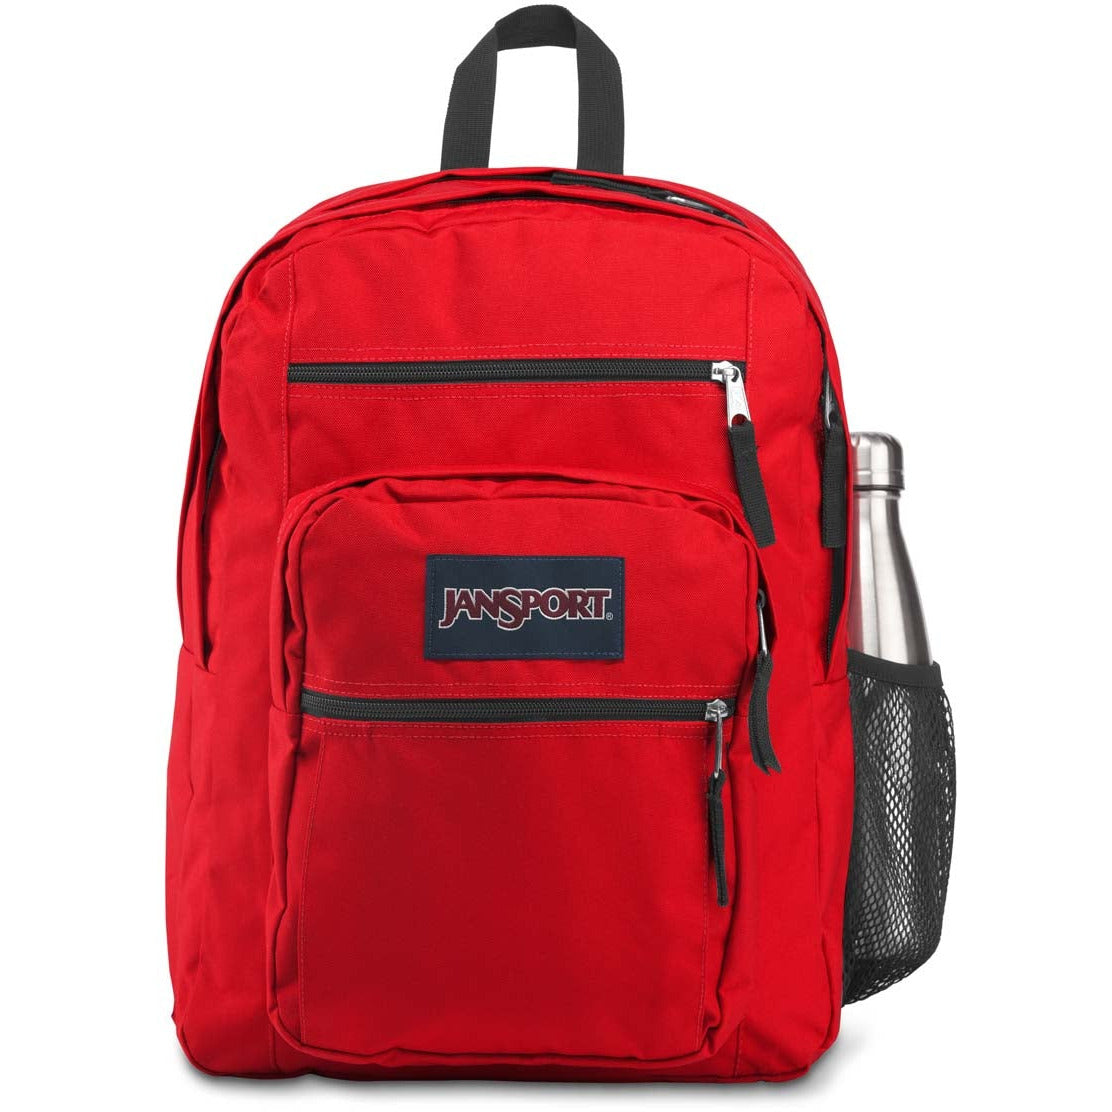 JanSport Big Student Backpack - Red Tape